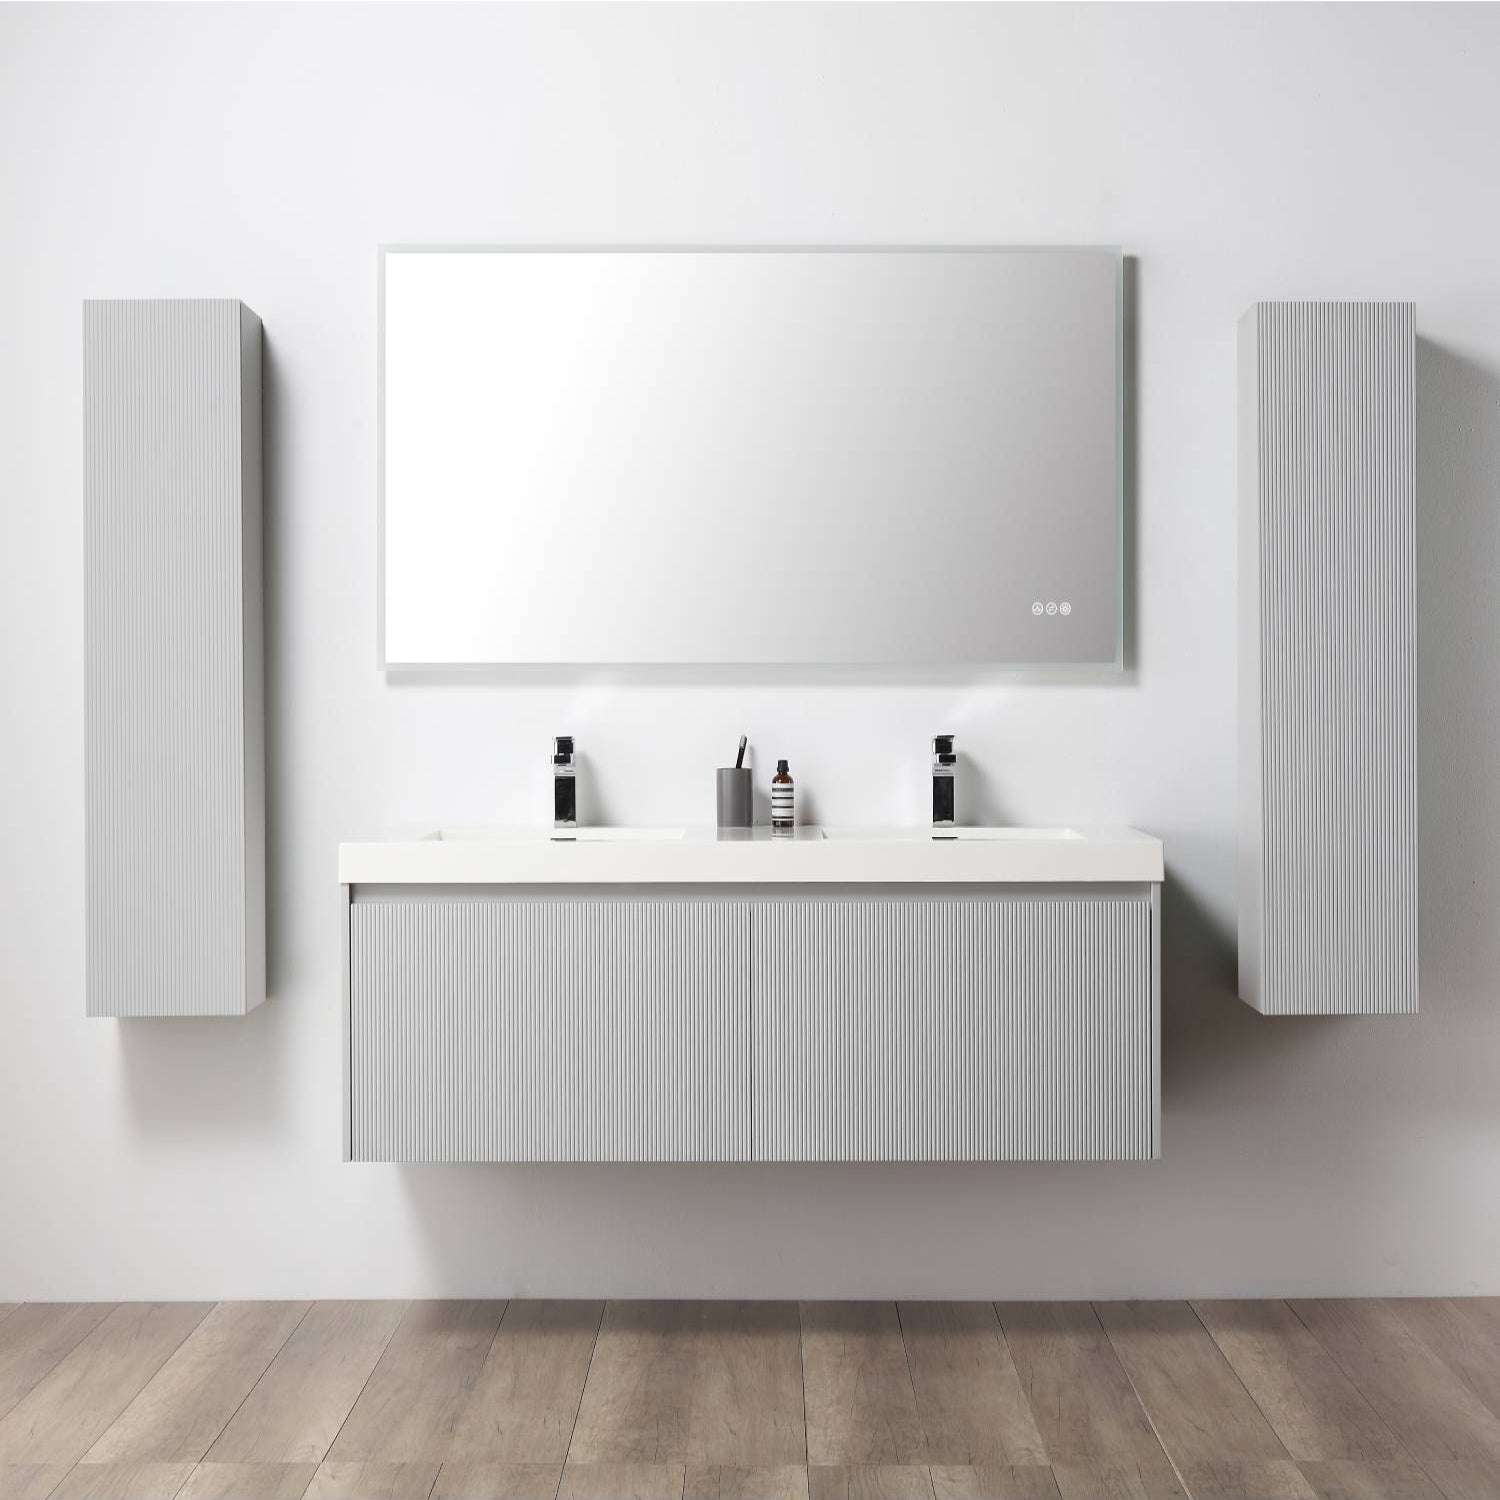 Positano 60" Bathroom Vanity  #size_60"  #color_light grey